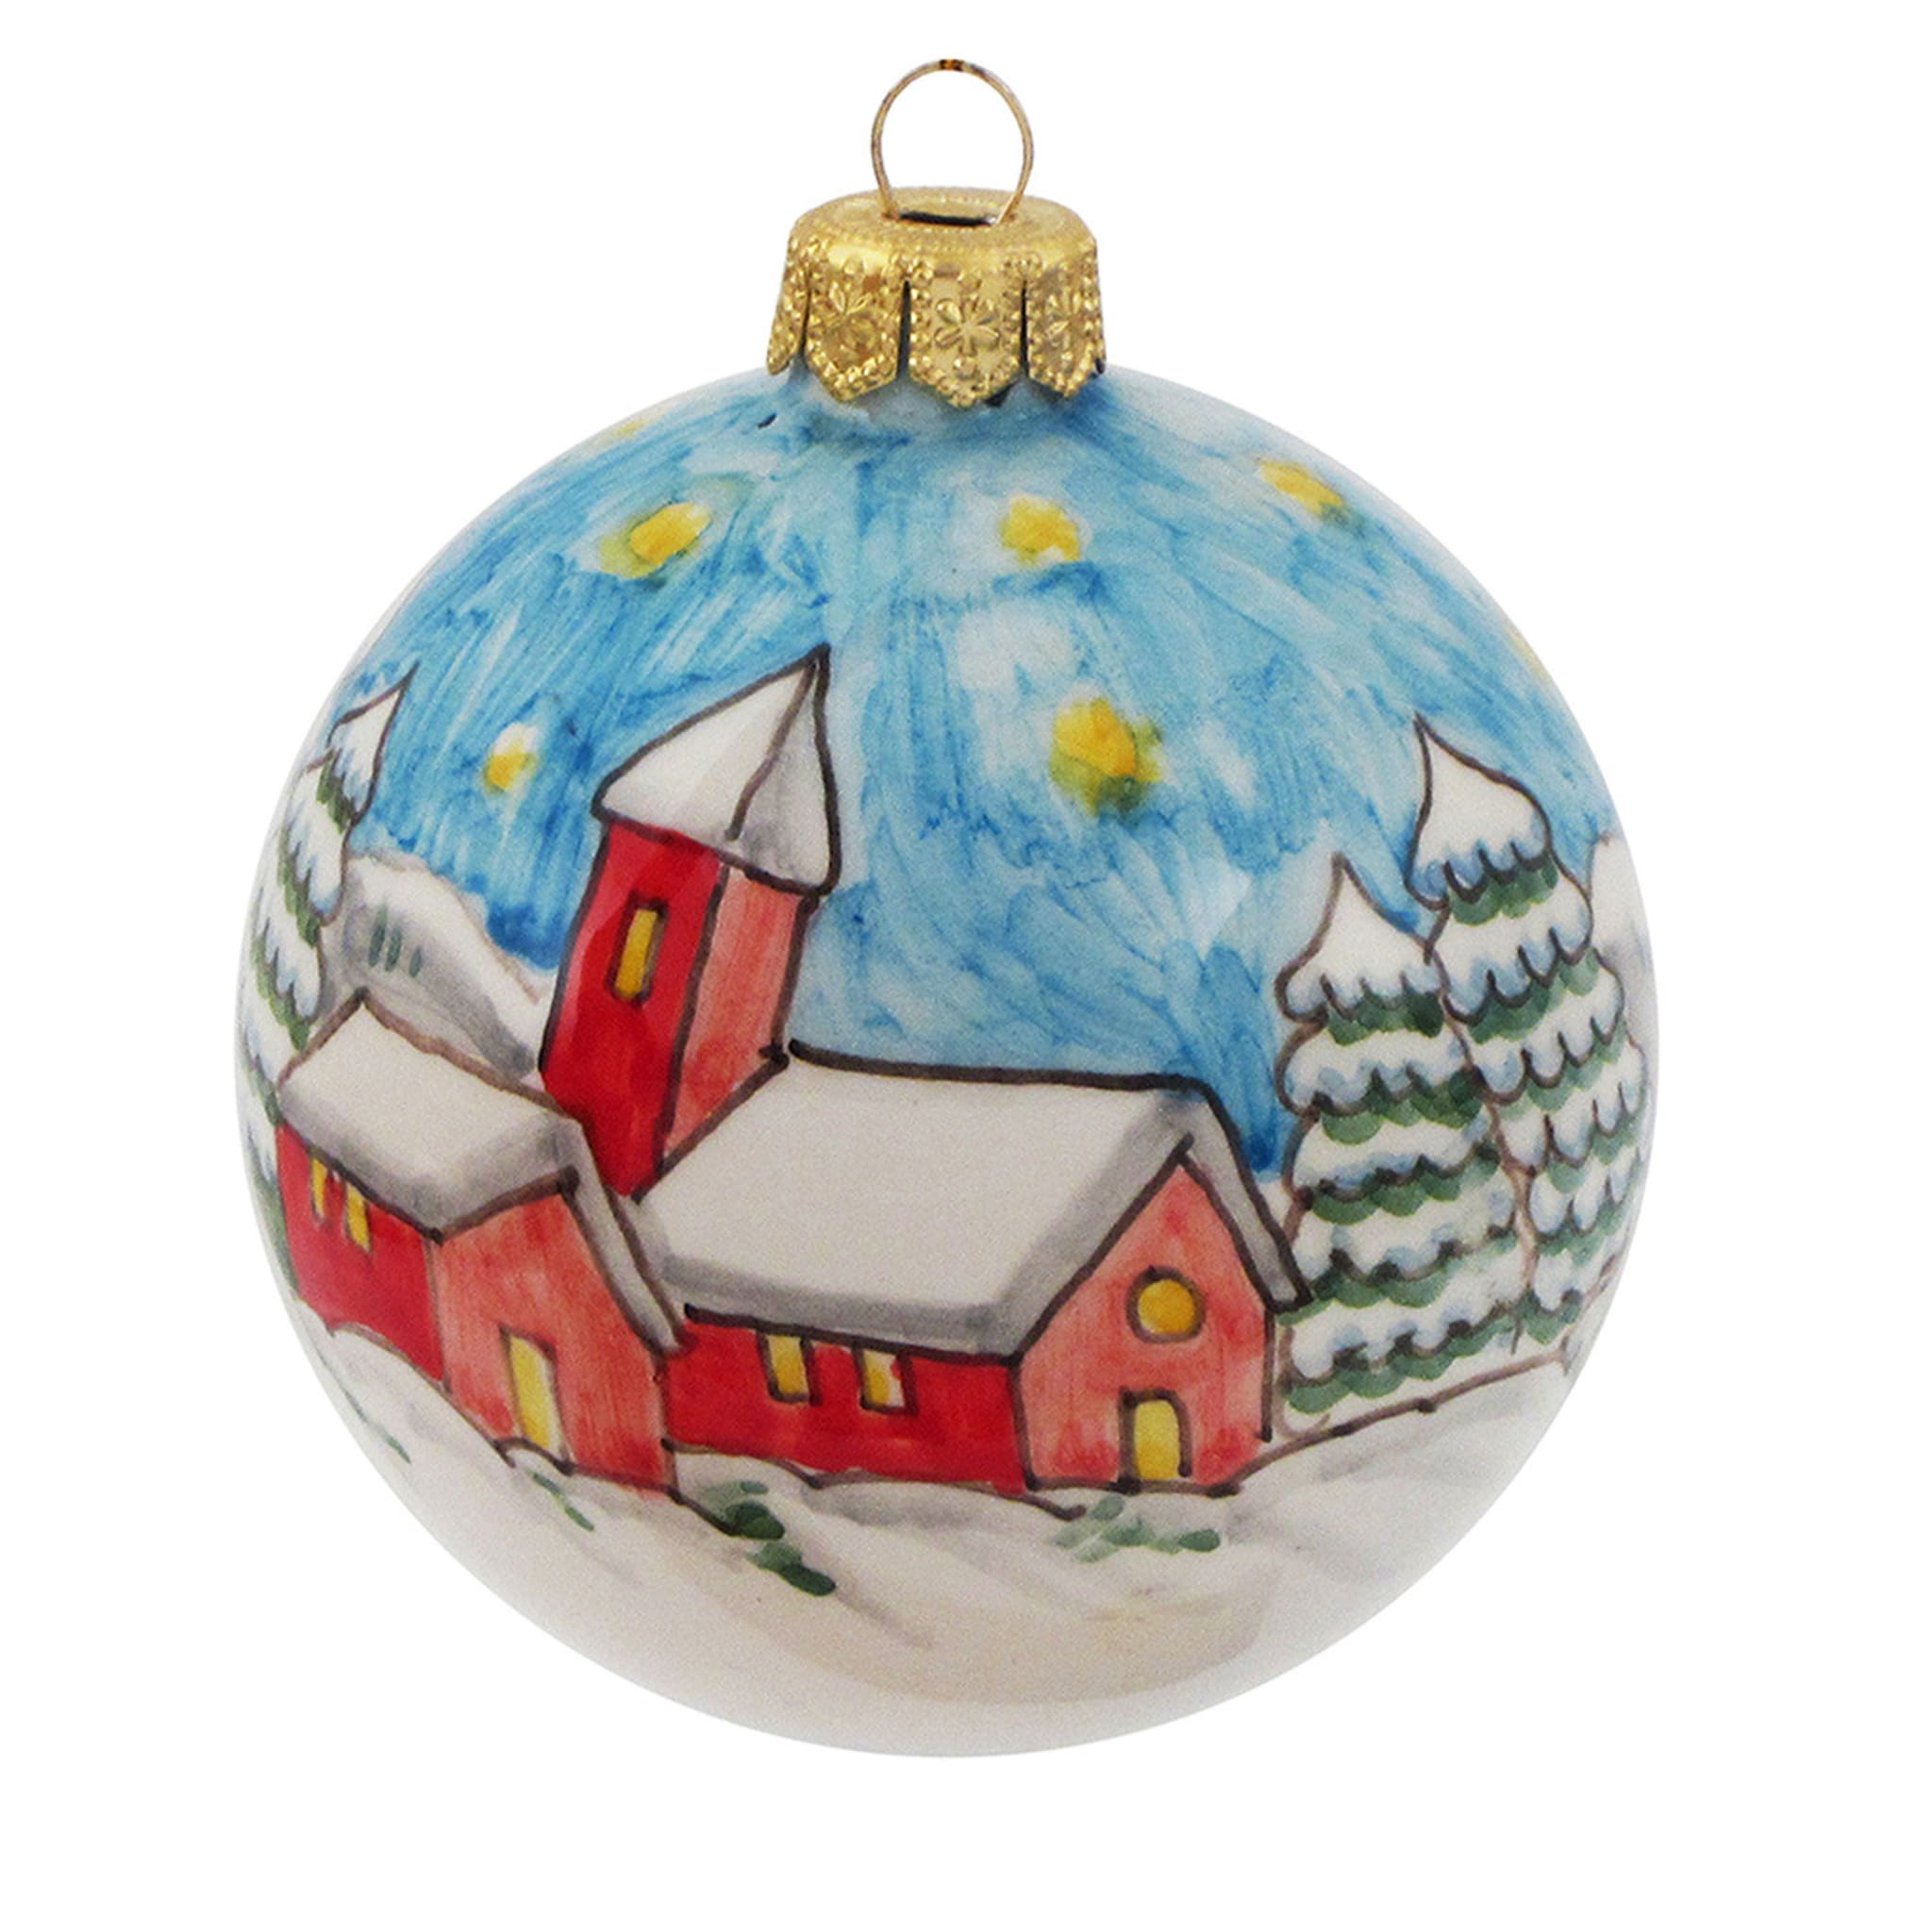 Décoration de Noël en forme de boule avec un paysage bleu - Vue principale